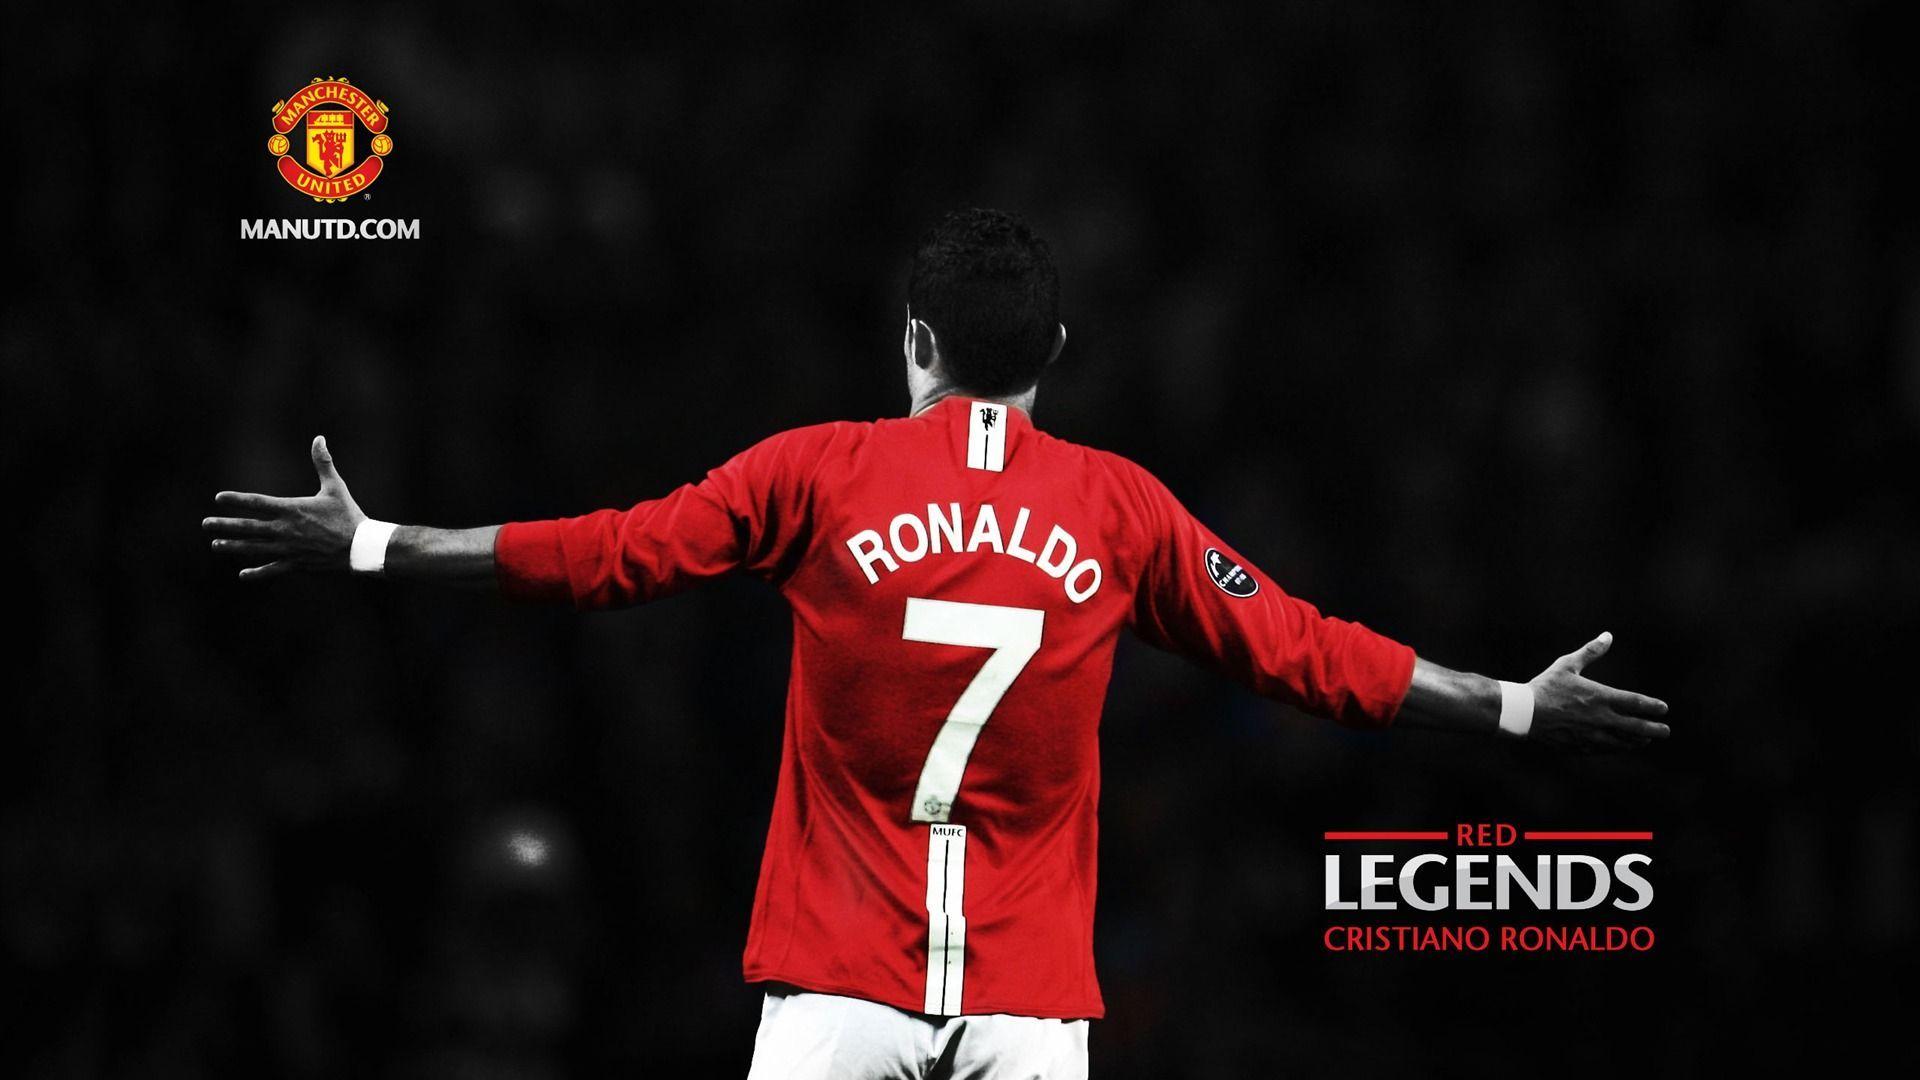 Cristiano Ronaldo Manchester United HD Wallpaper. HD Wallpaper. Manchester united wallpaper, Manchester united logo, Cristiano ronaldo manchester